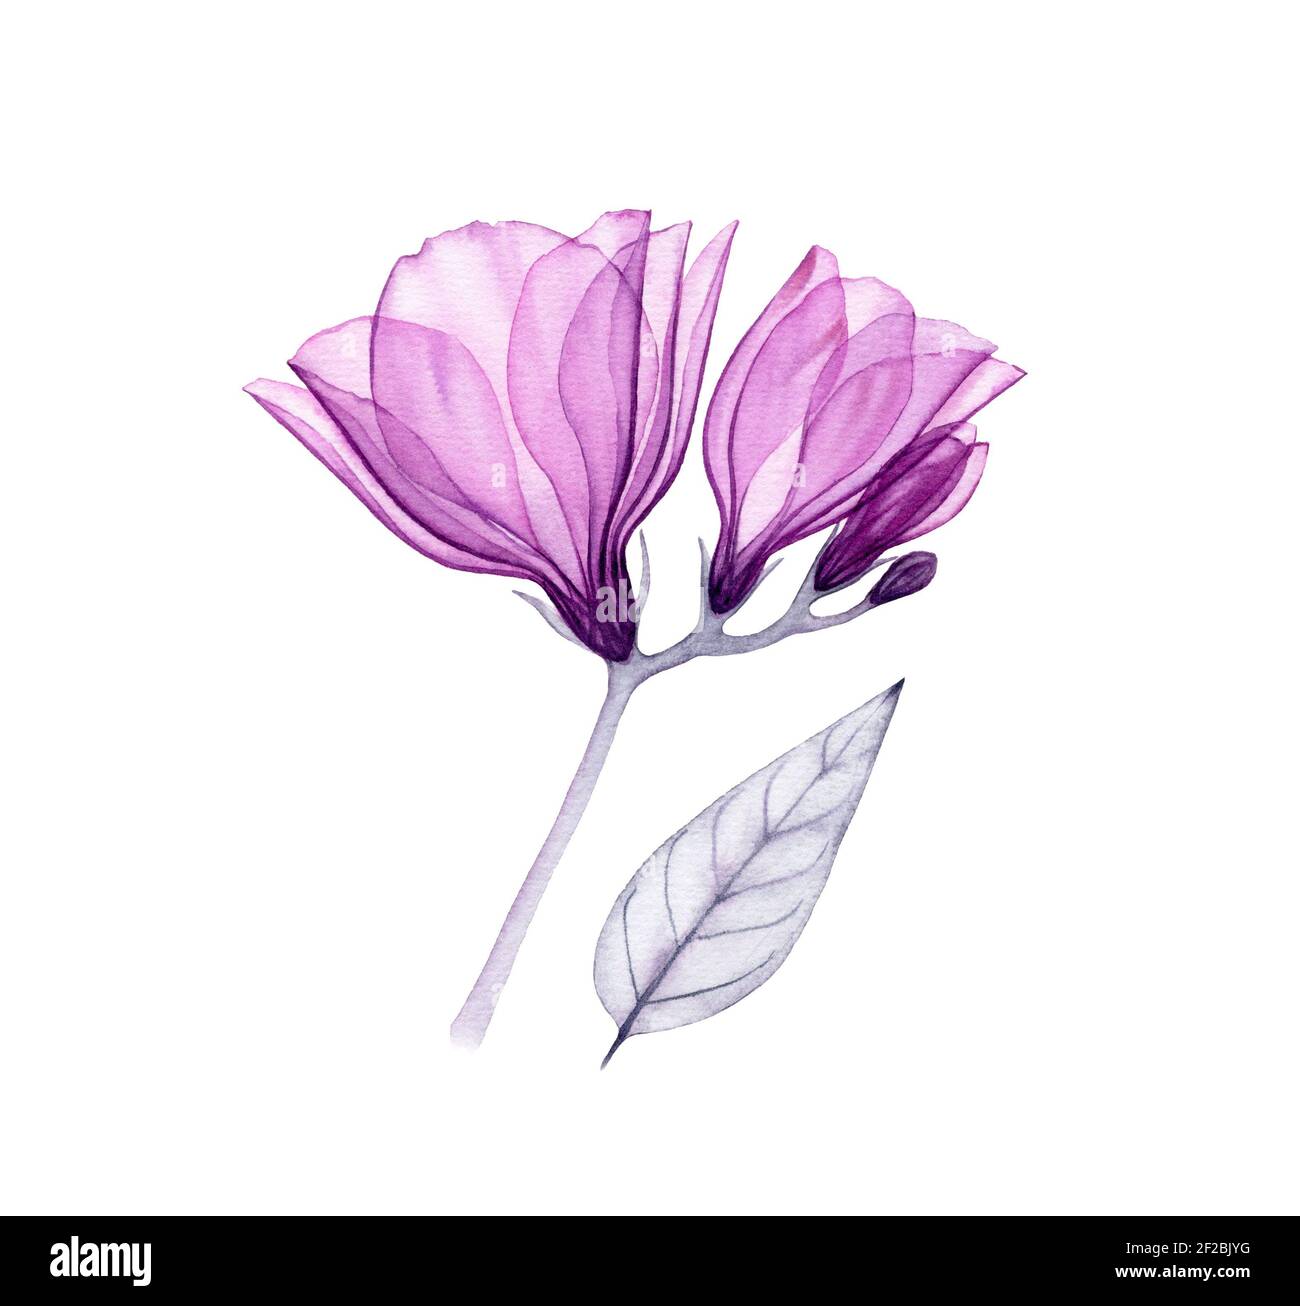 Aquarell lila fresia. Handbemaltes Kunstwerk mit transparenten violetten Blumen isoliert auf weiß. Botanische Illustration für Karten, Hochzeitsdesign Stockfoto